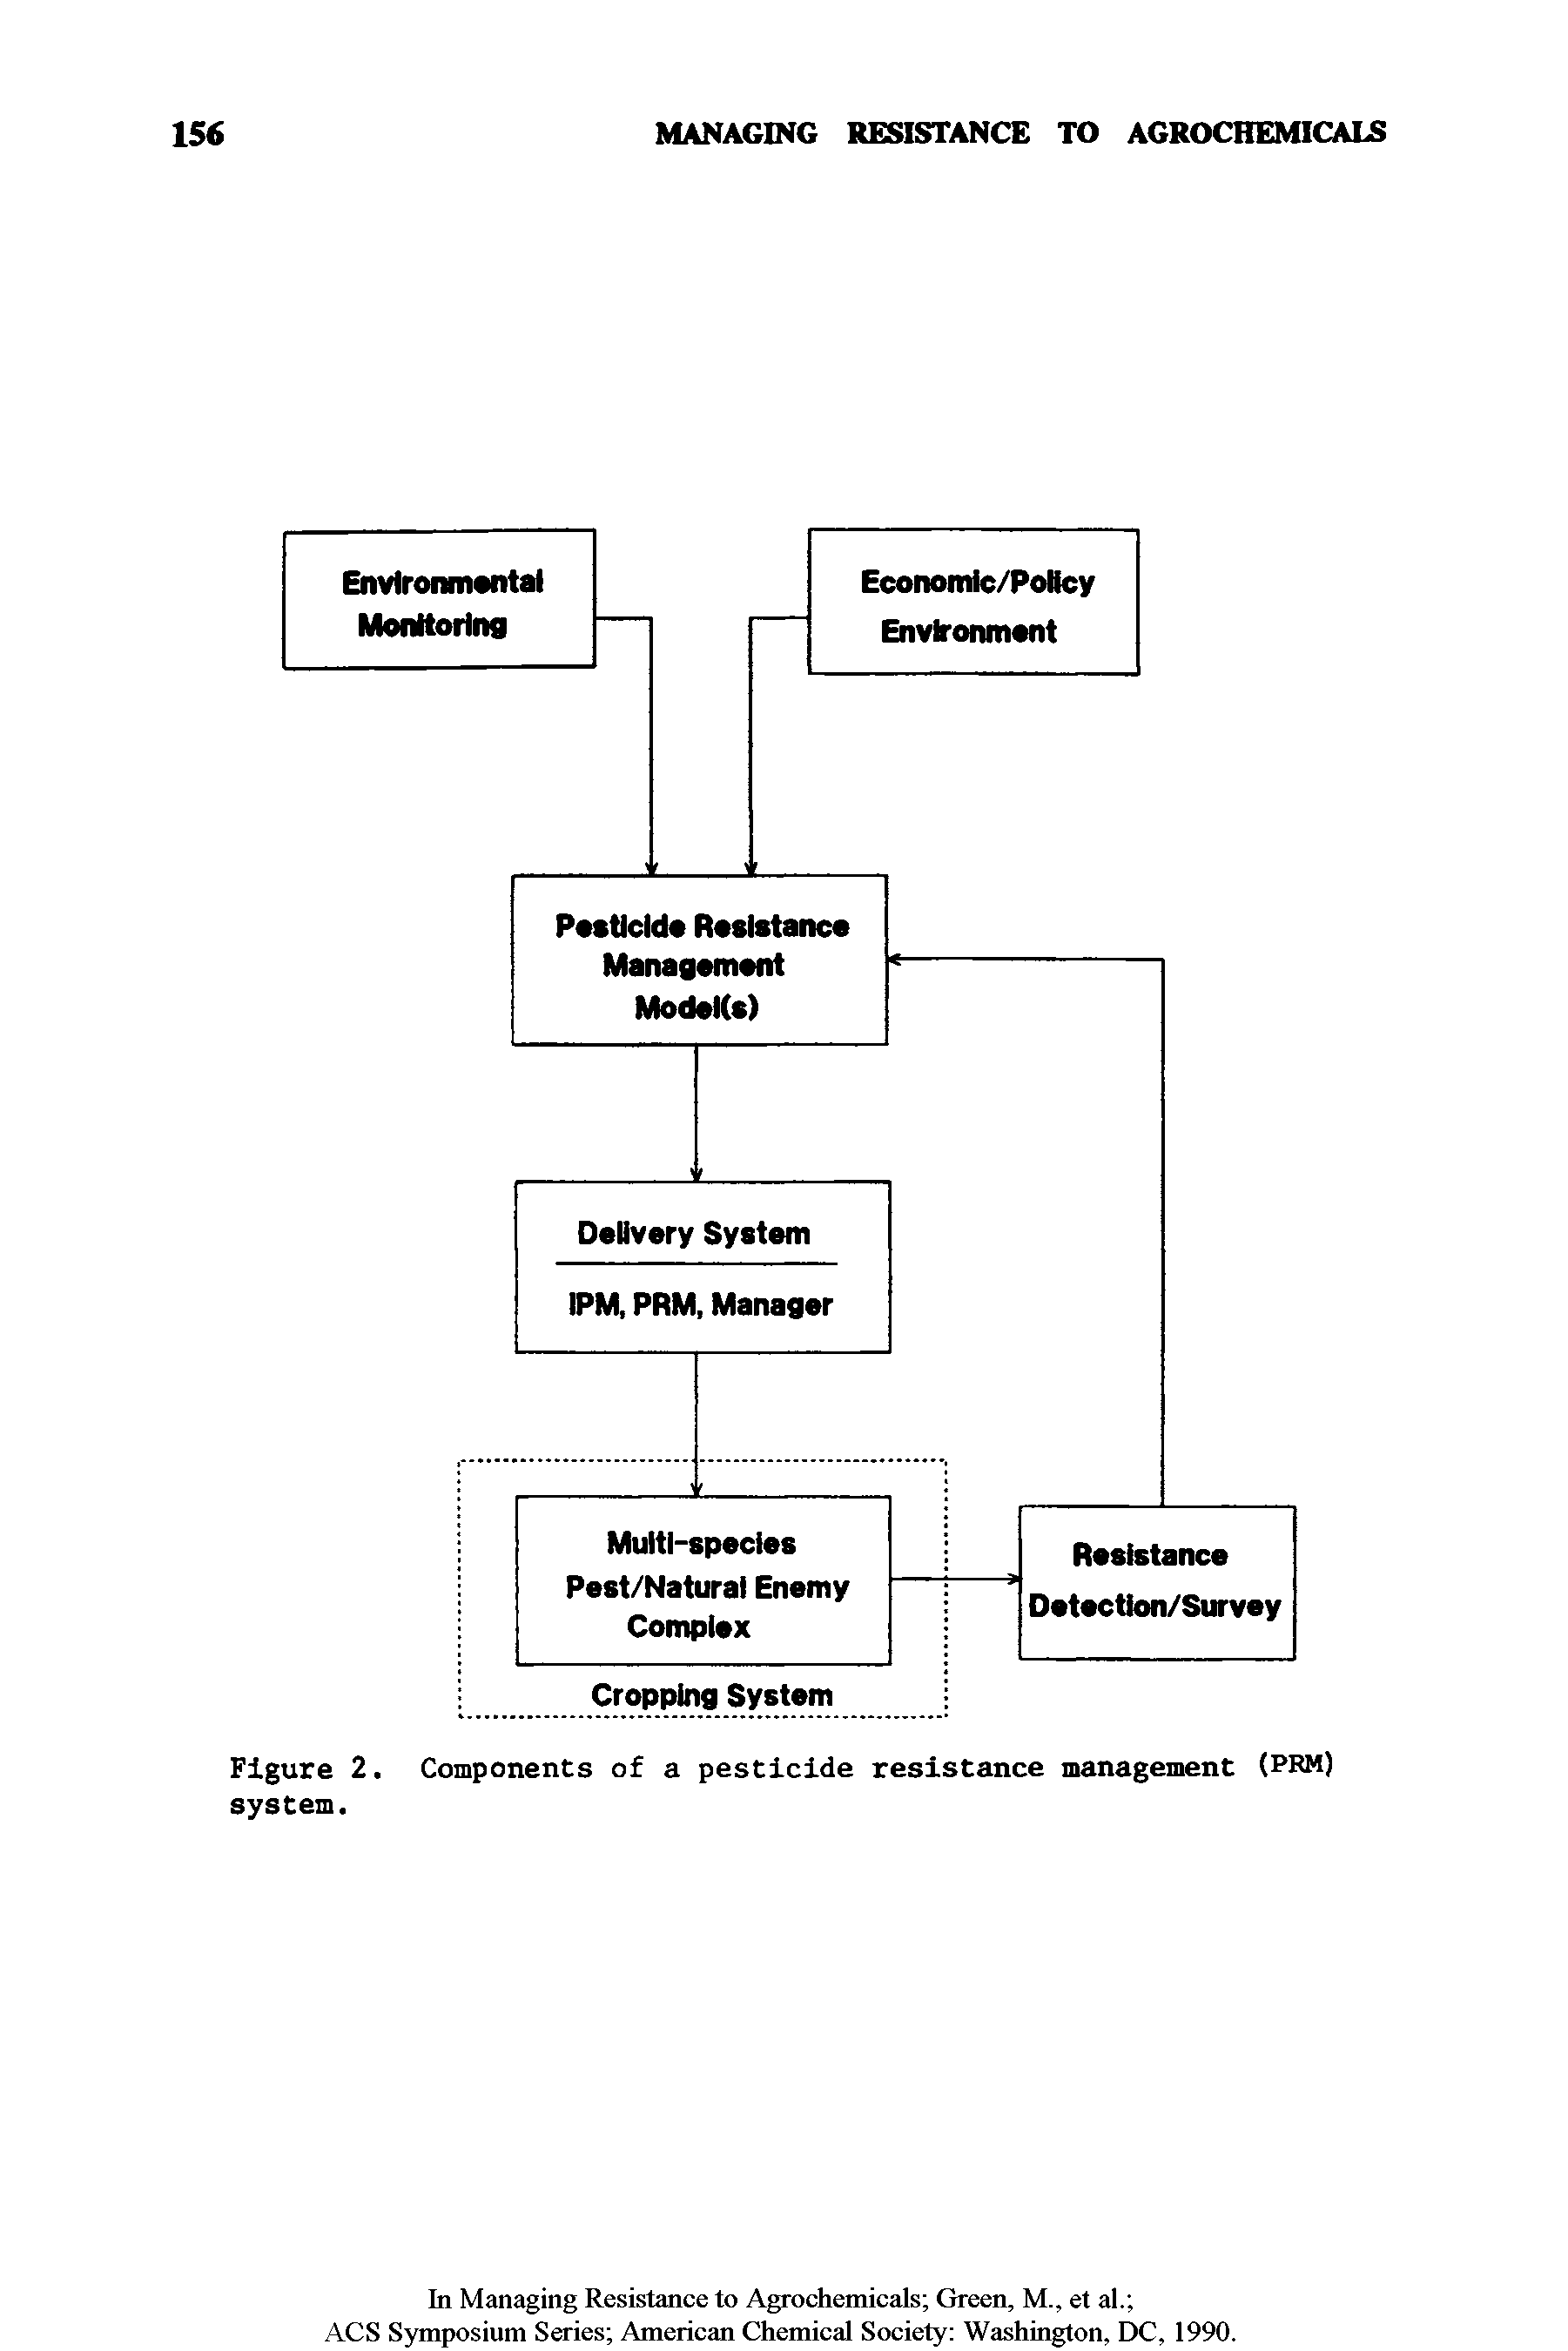 Figure 2. Components of a pesticide resistance management (PRM) system.